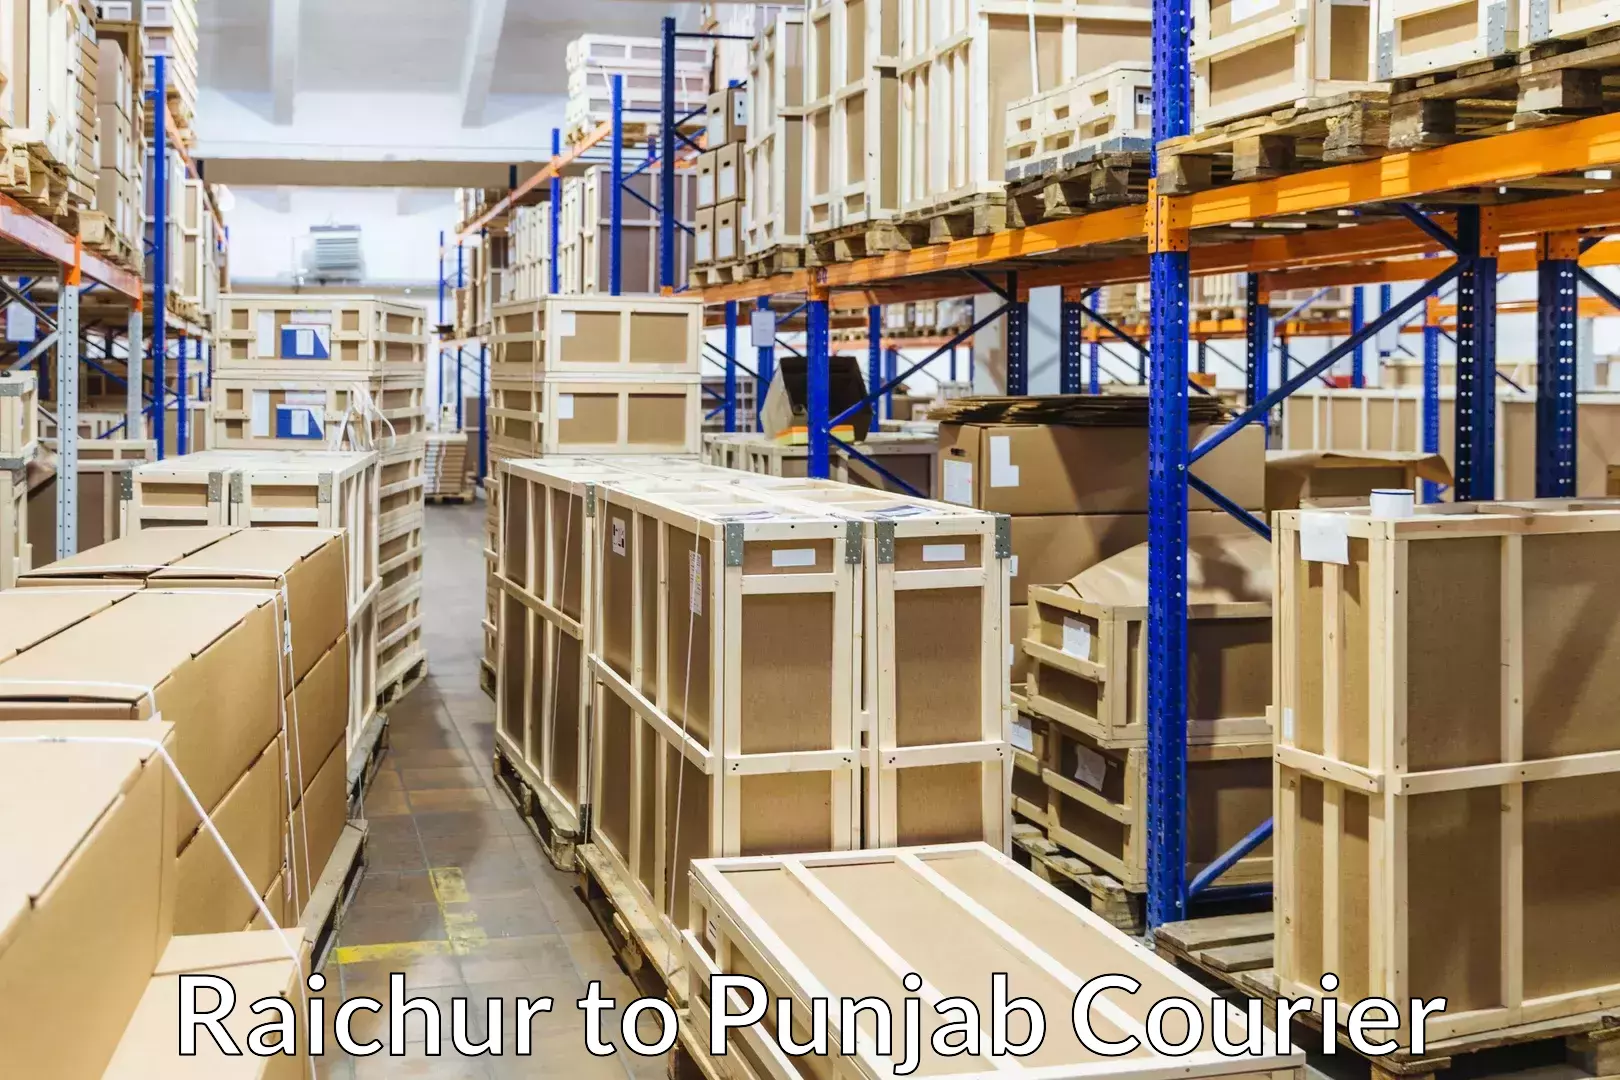 Professional moving company Raichur to Jalalabad